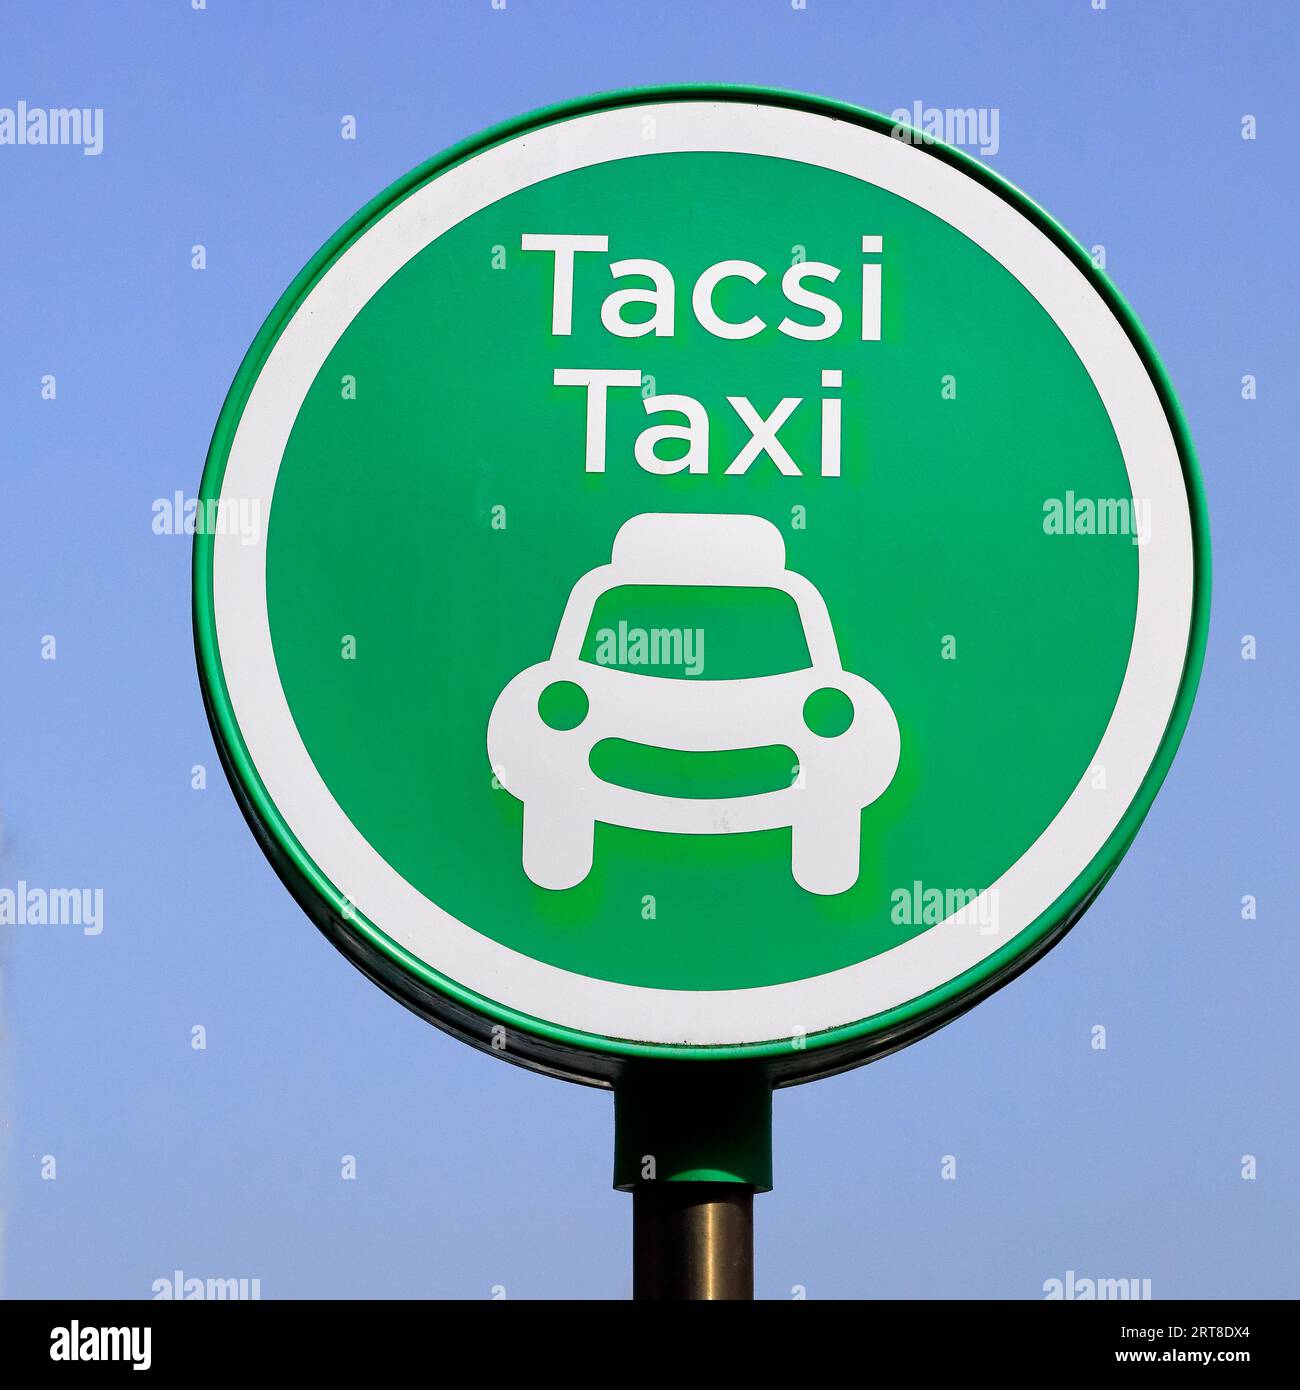 Runder grüner Taxistand zweisprachiges walisisches/englisches Schild für Tacsi/Taxi Stockfoto